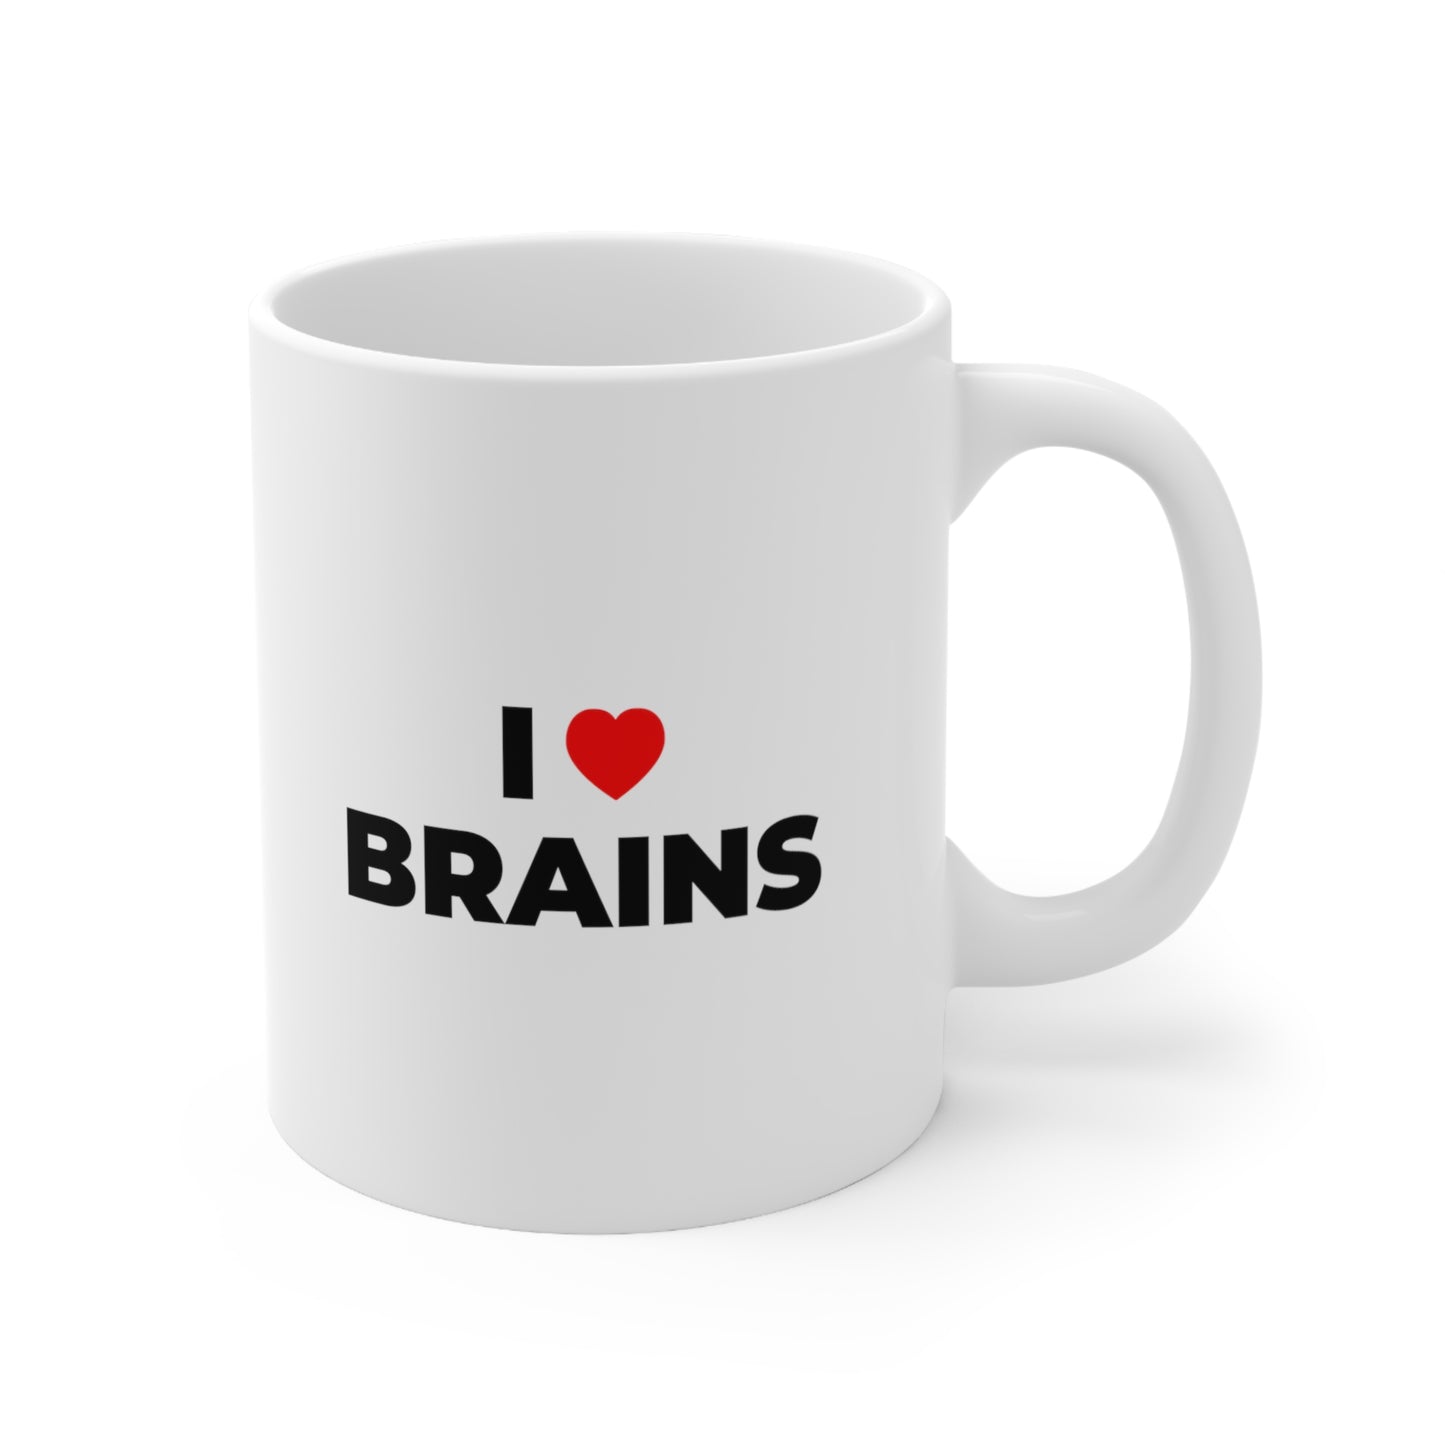 I Love Brains Coffee Mug 11oz